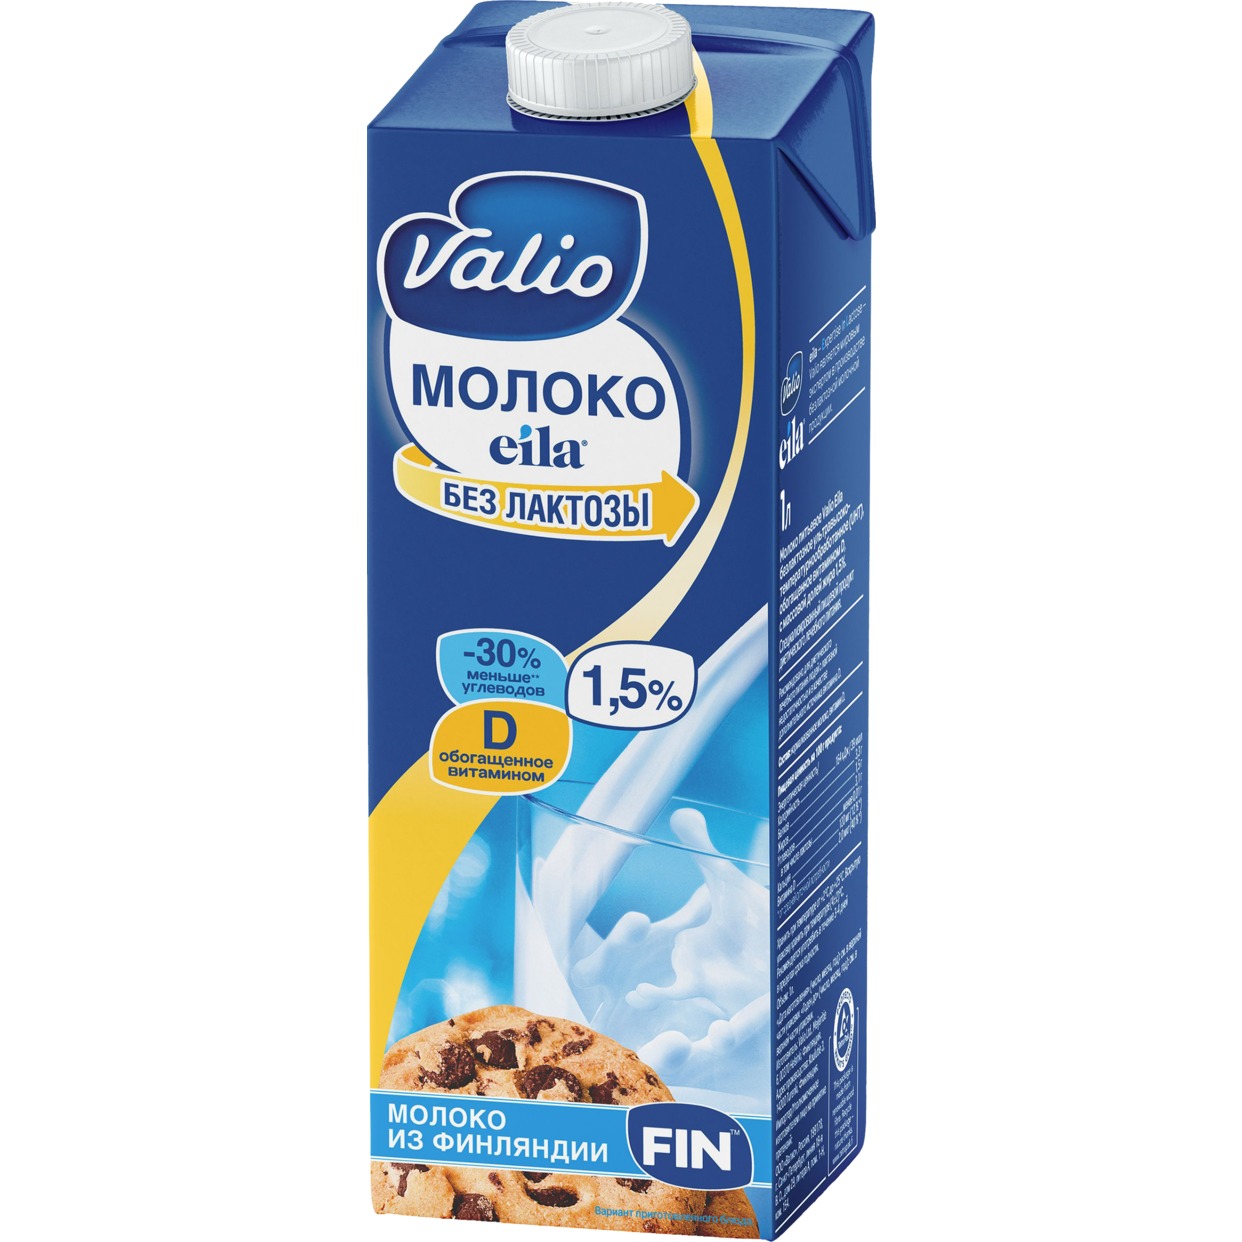 Молоко Valio Eila ультрапастеризованное без лактозы 1,5% 1 л по акции в Пятерочке